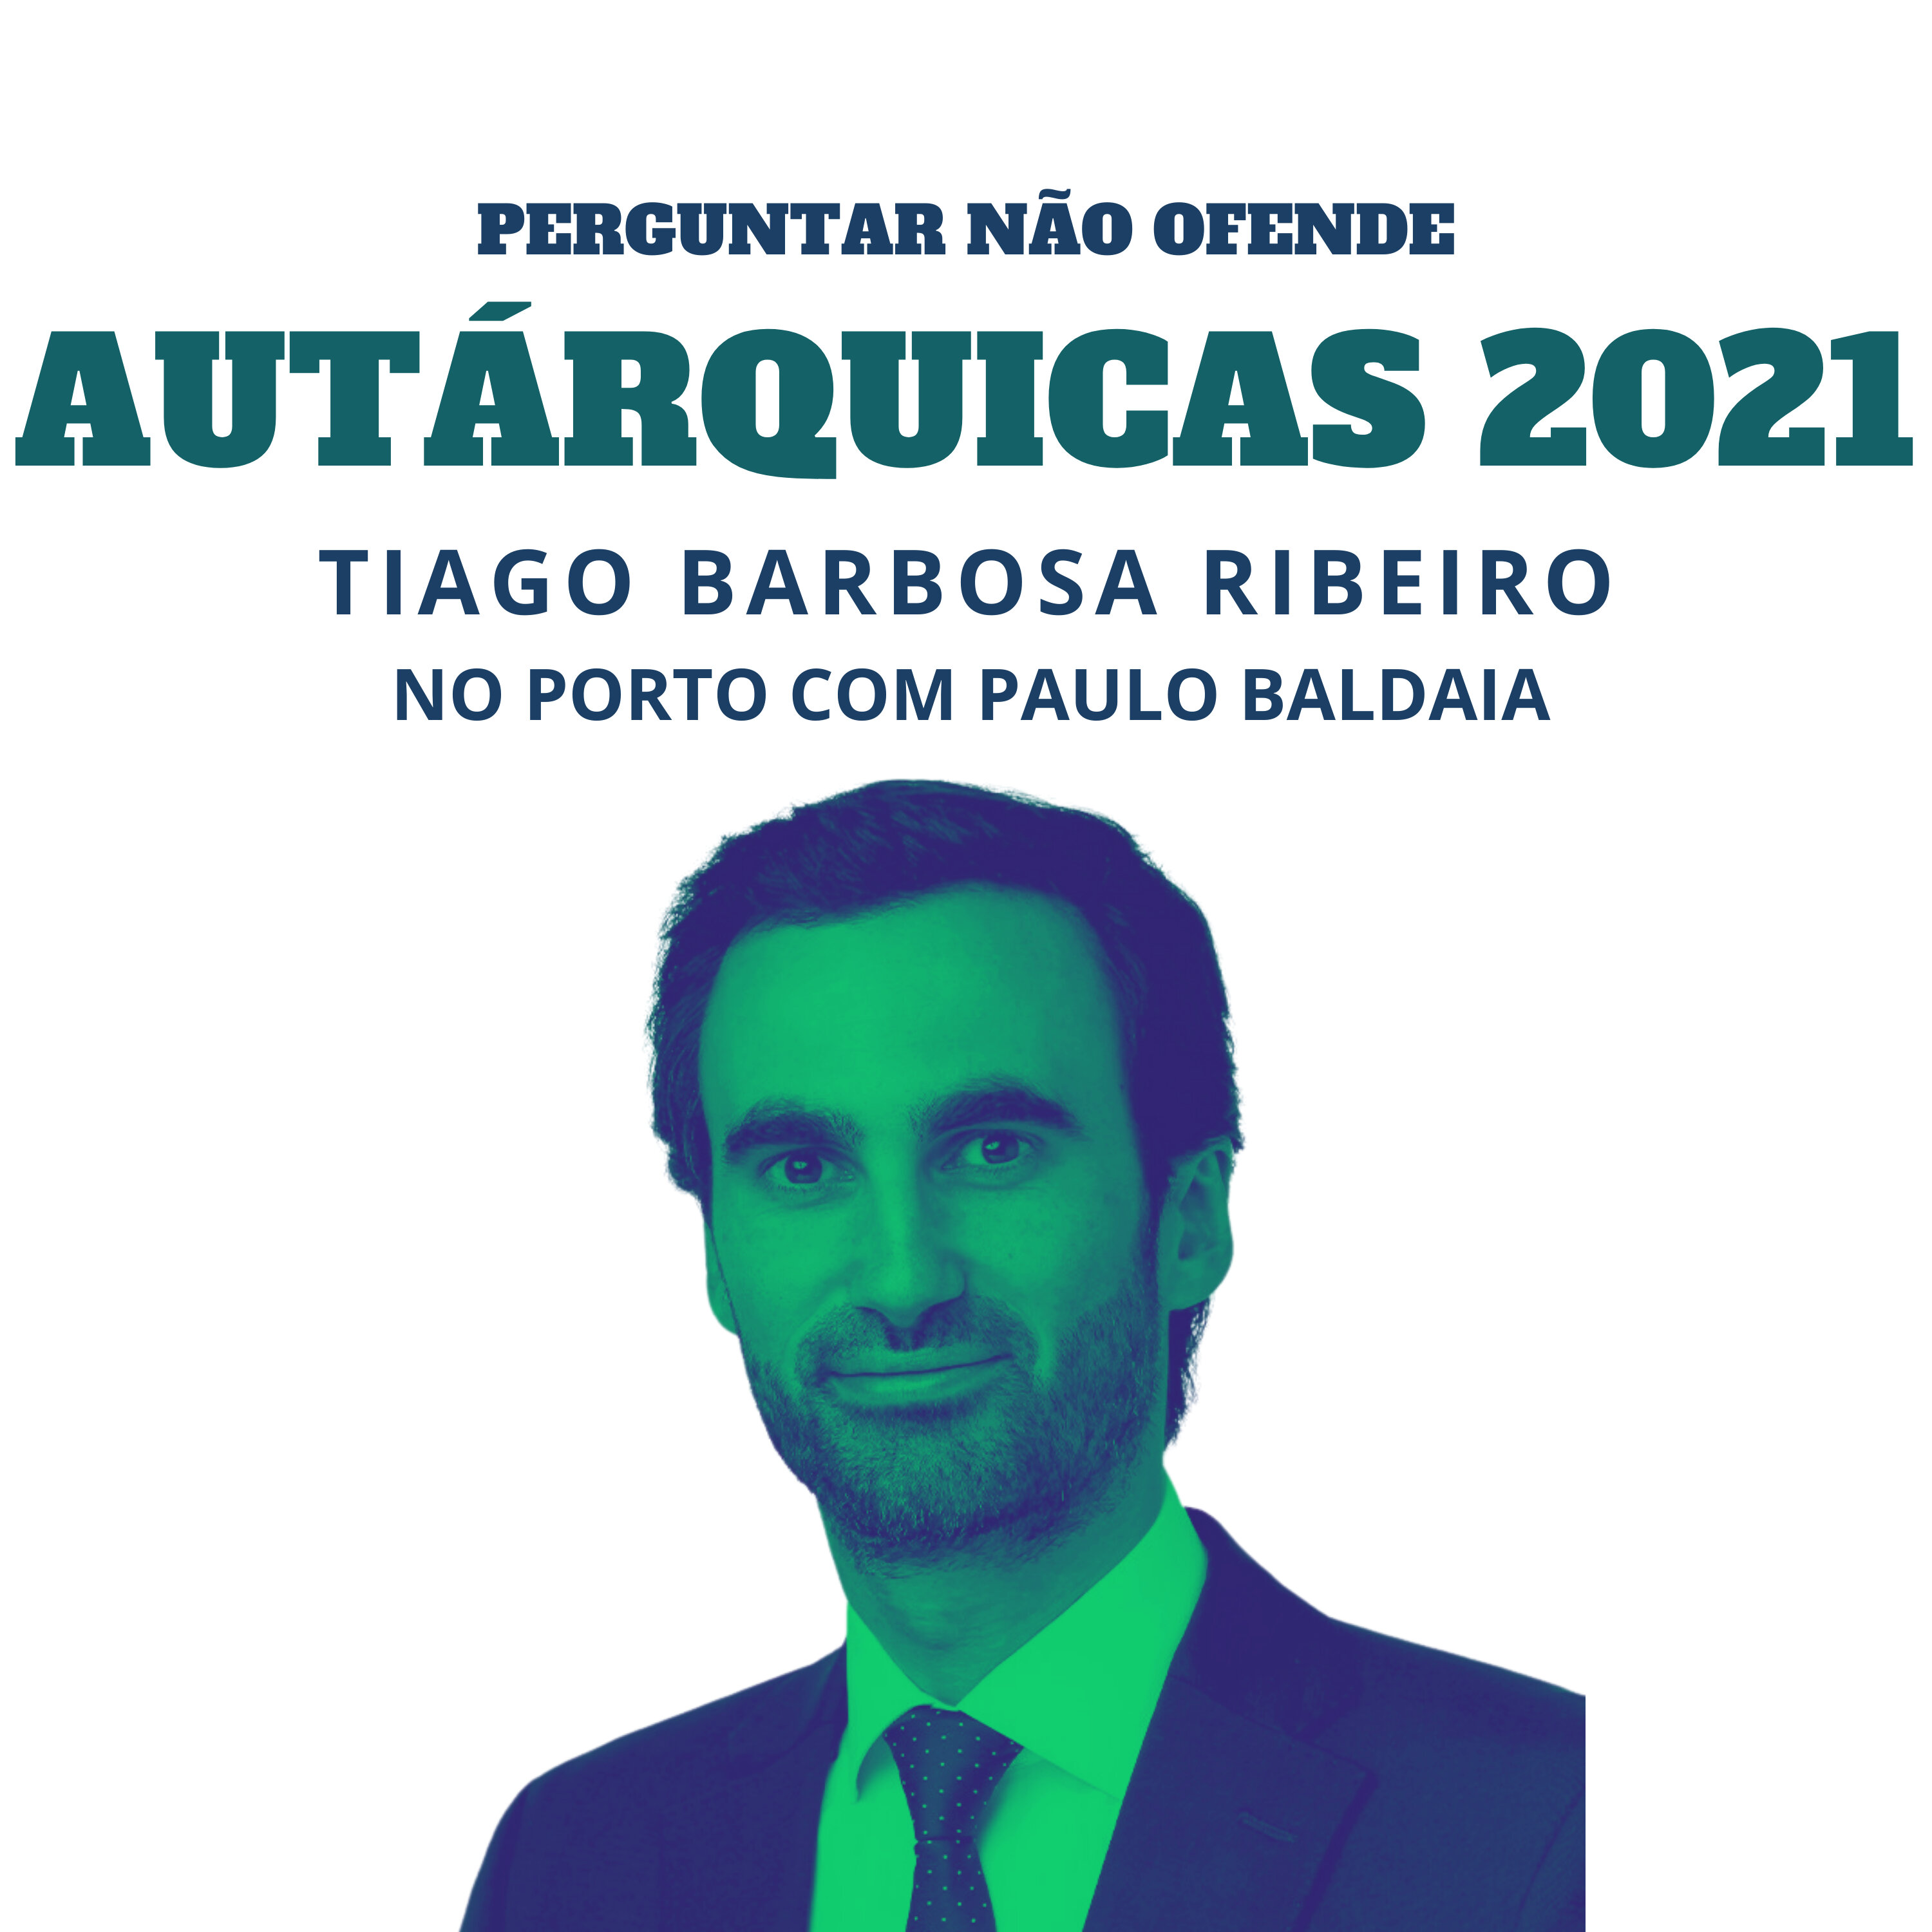 Autárquicas 2021: Tiago Barbosa Ribeiro conversa com Paulo Baldaia, no Porto